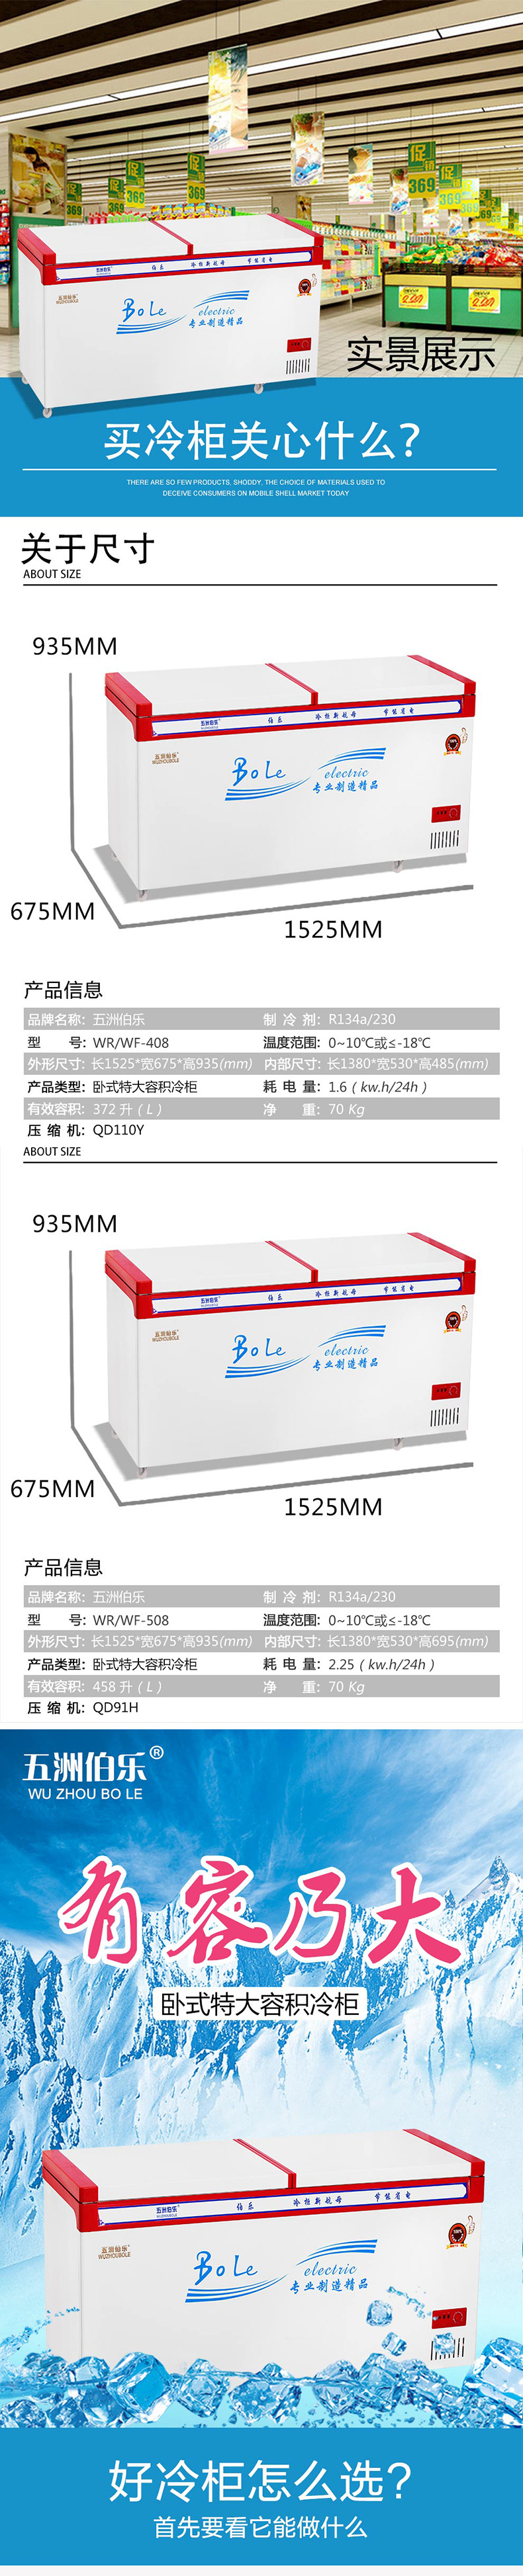 WR/WF508五洲伯乐1米6顶开门双门单温商用冰柜冷柜速冻柜冷藏